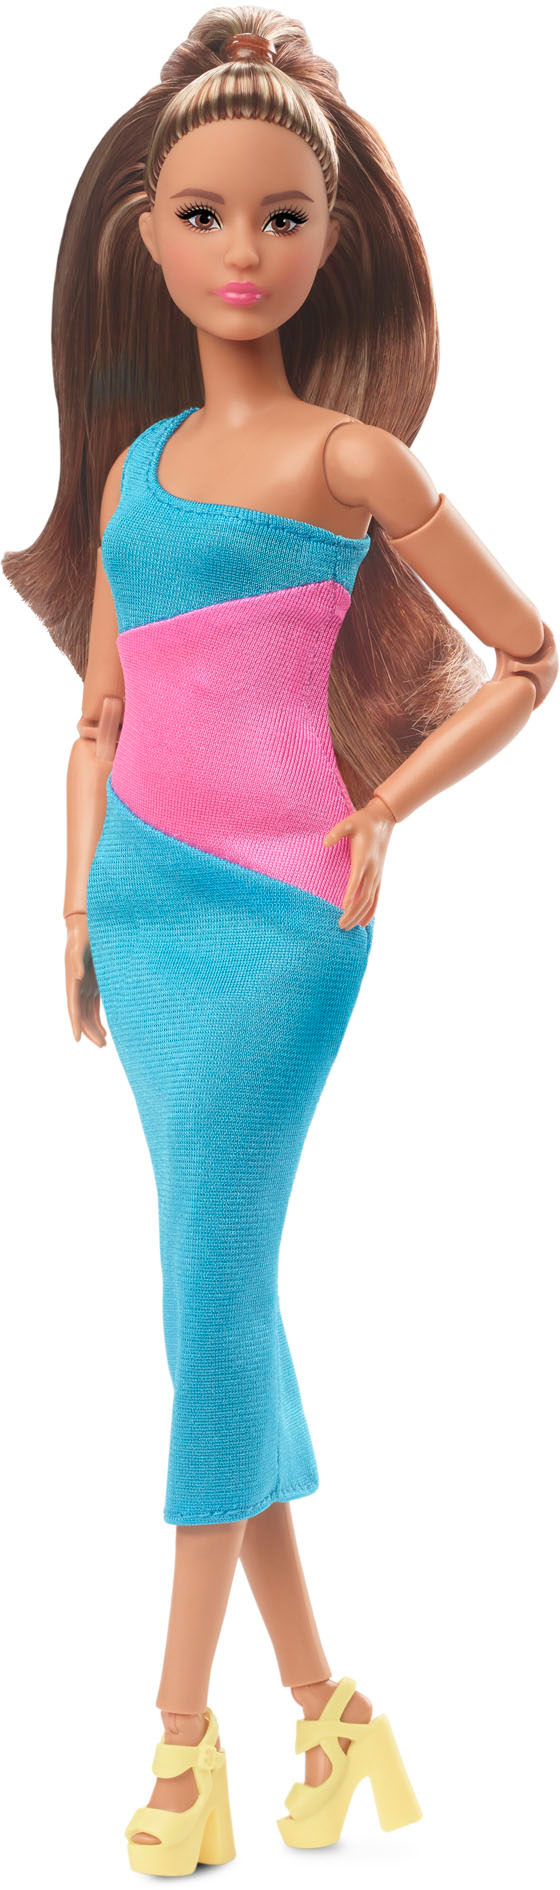 Barbie - Looks Signature Brunette 13 Doll